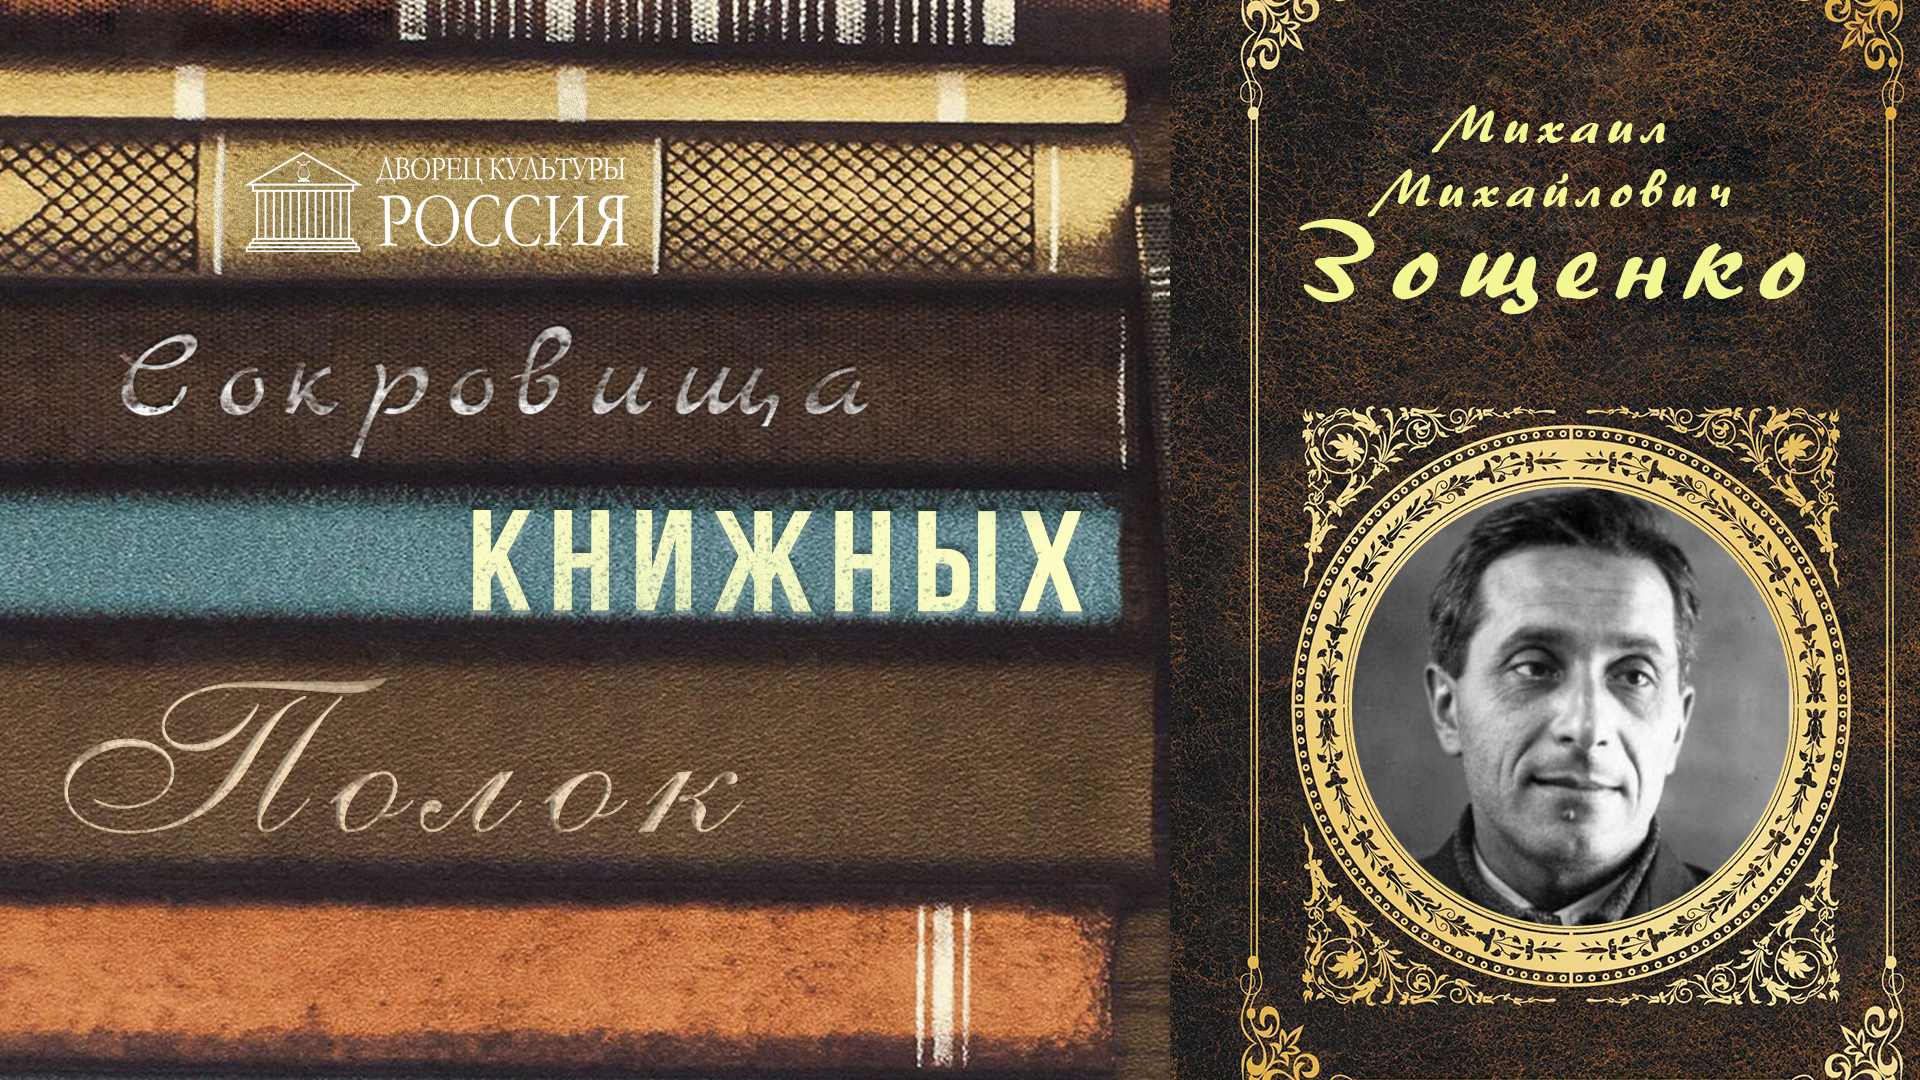 Онлайн-рубрика «Сокровища книжных полок» — «Михаил Зощенко»